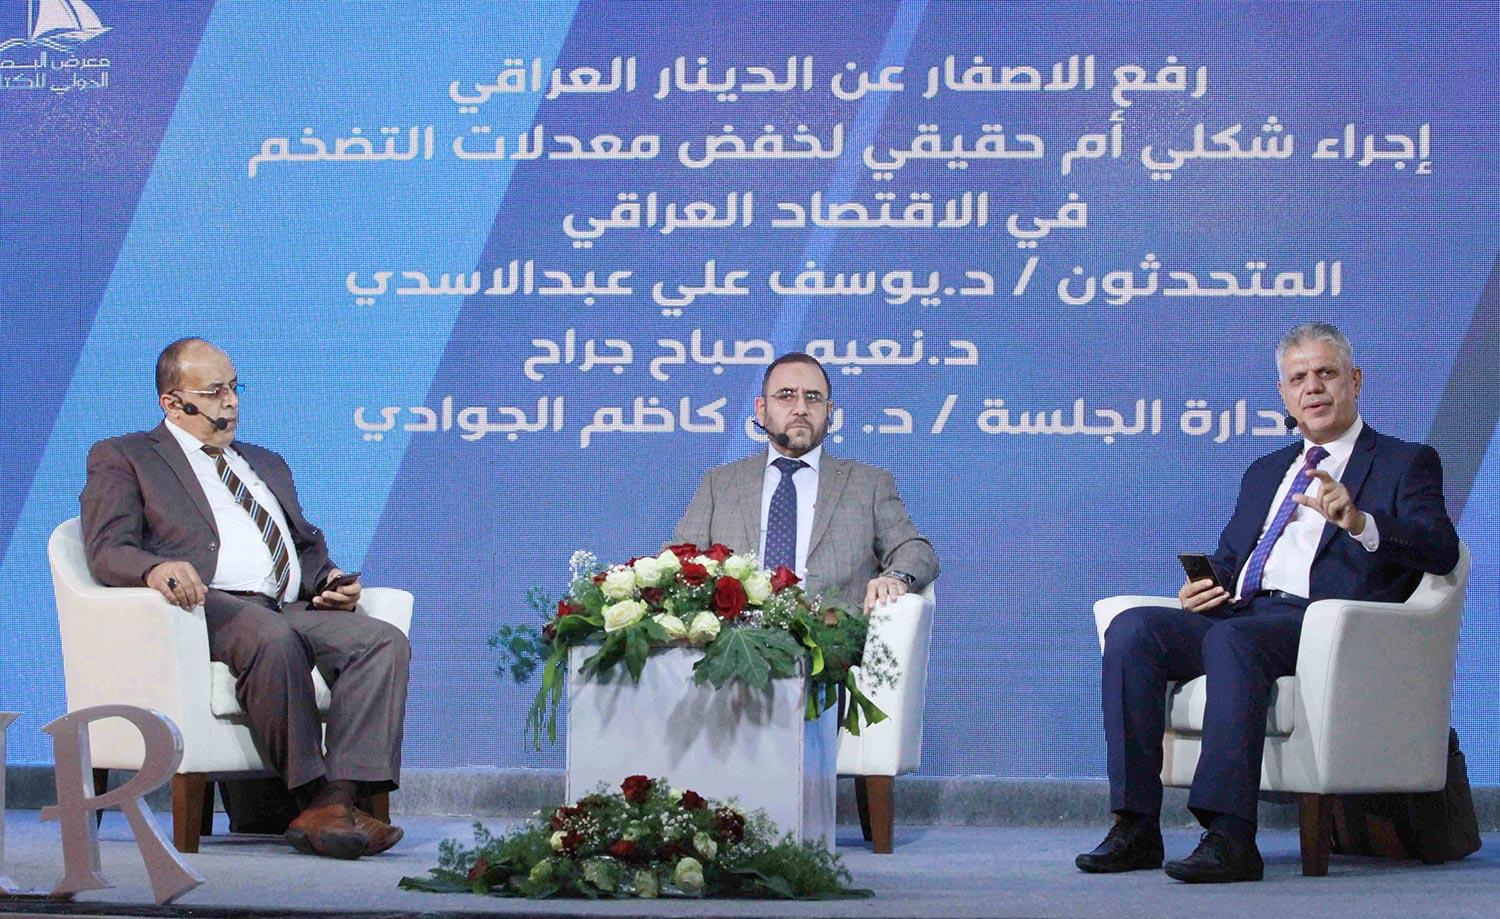 فعاليات معرض البصرة للكتاب تحتضن جلسة اقتصادية بعنوان   رفع الأصفار عن الدينار العراق